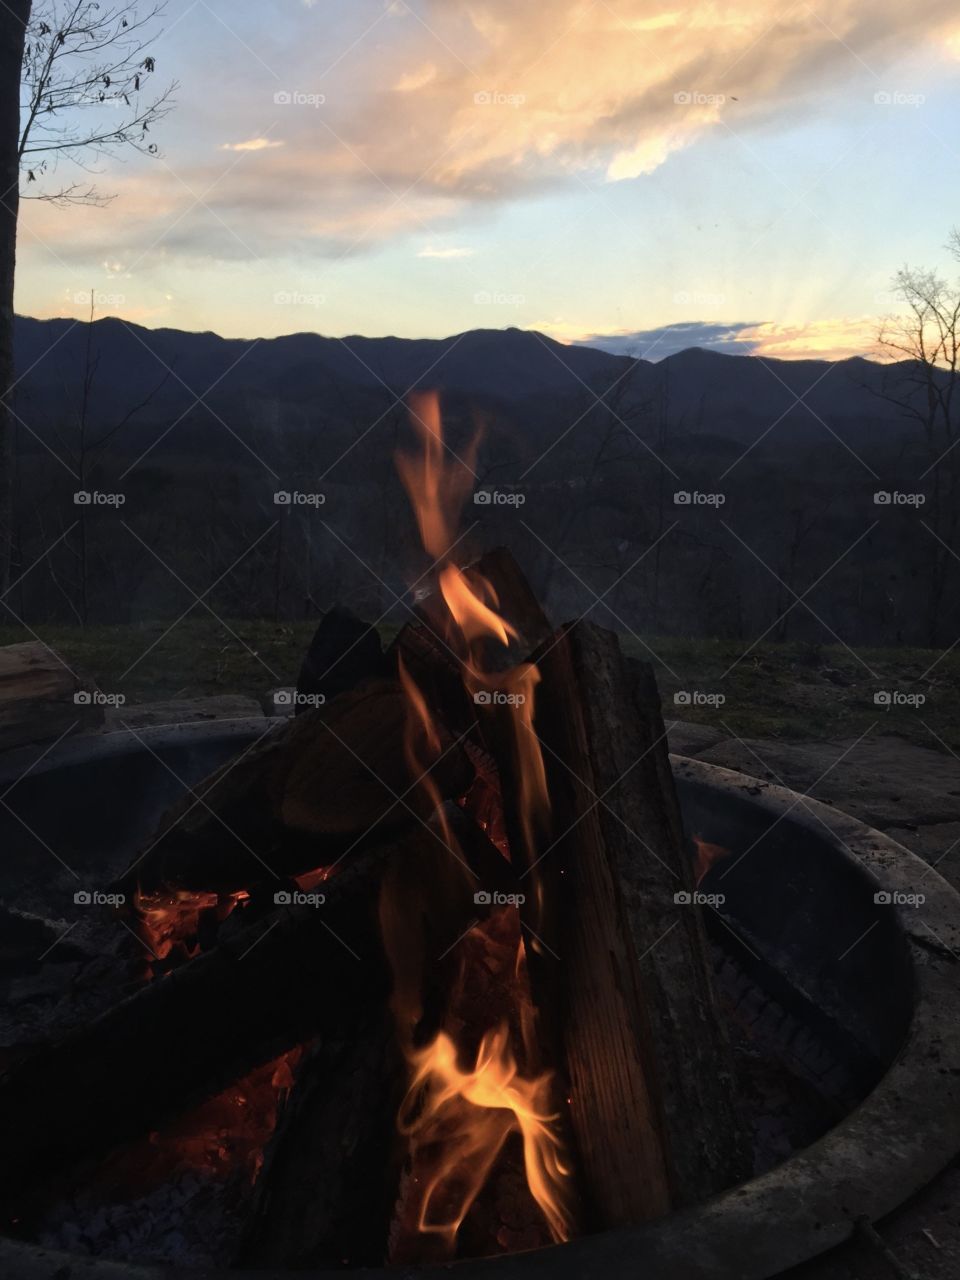 Campfire mountain